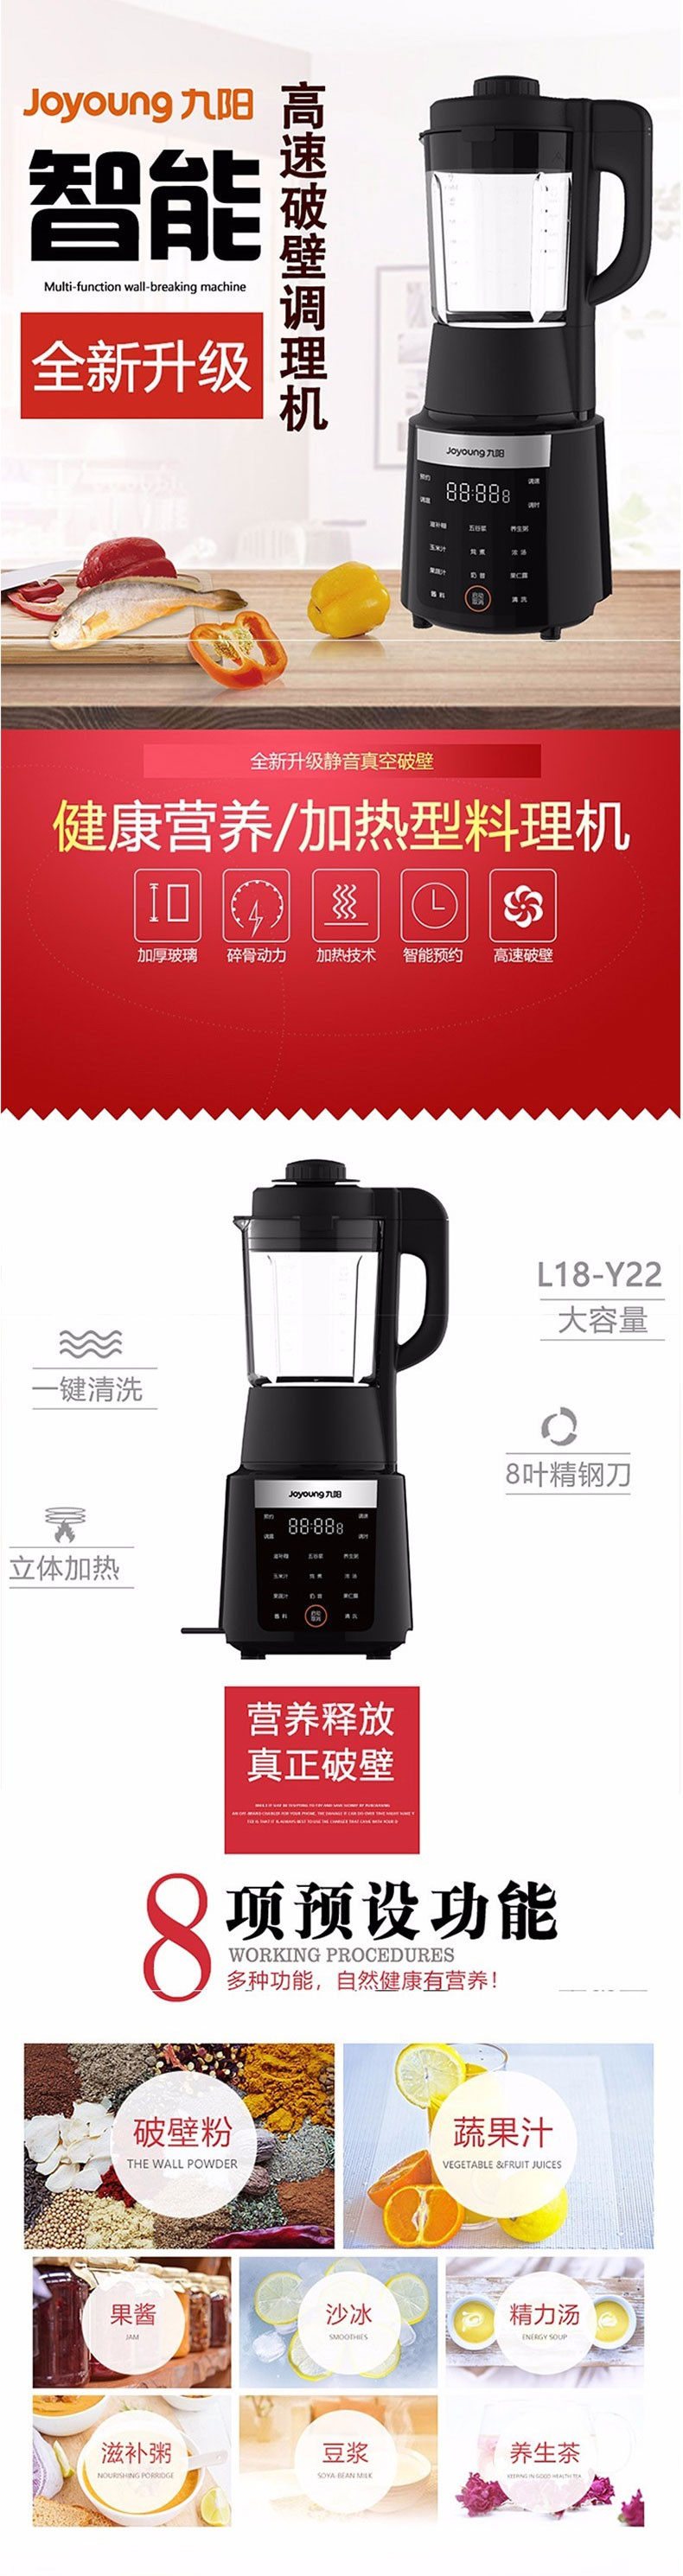 九阳/Joyoung 破壁机加热破壁豆浆机婴儿辅食家用多功能搅拌榨汁机L18-Y22 黑色